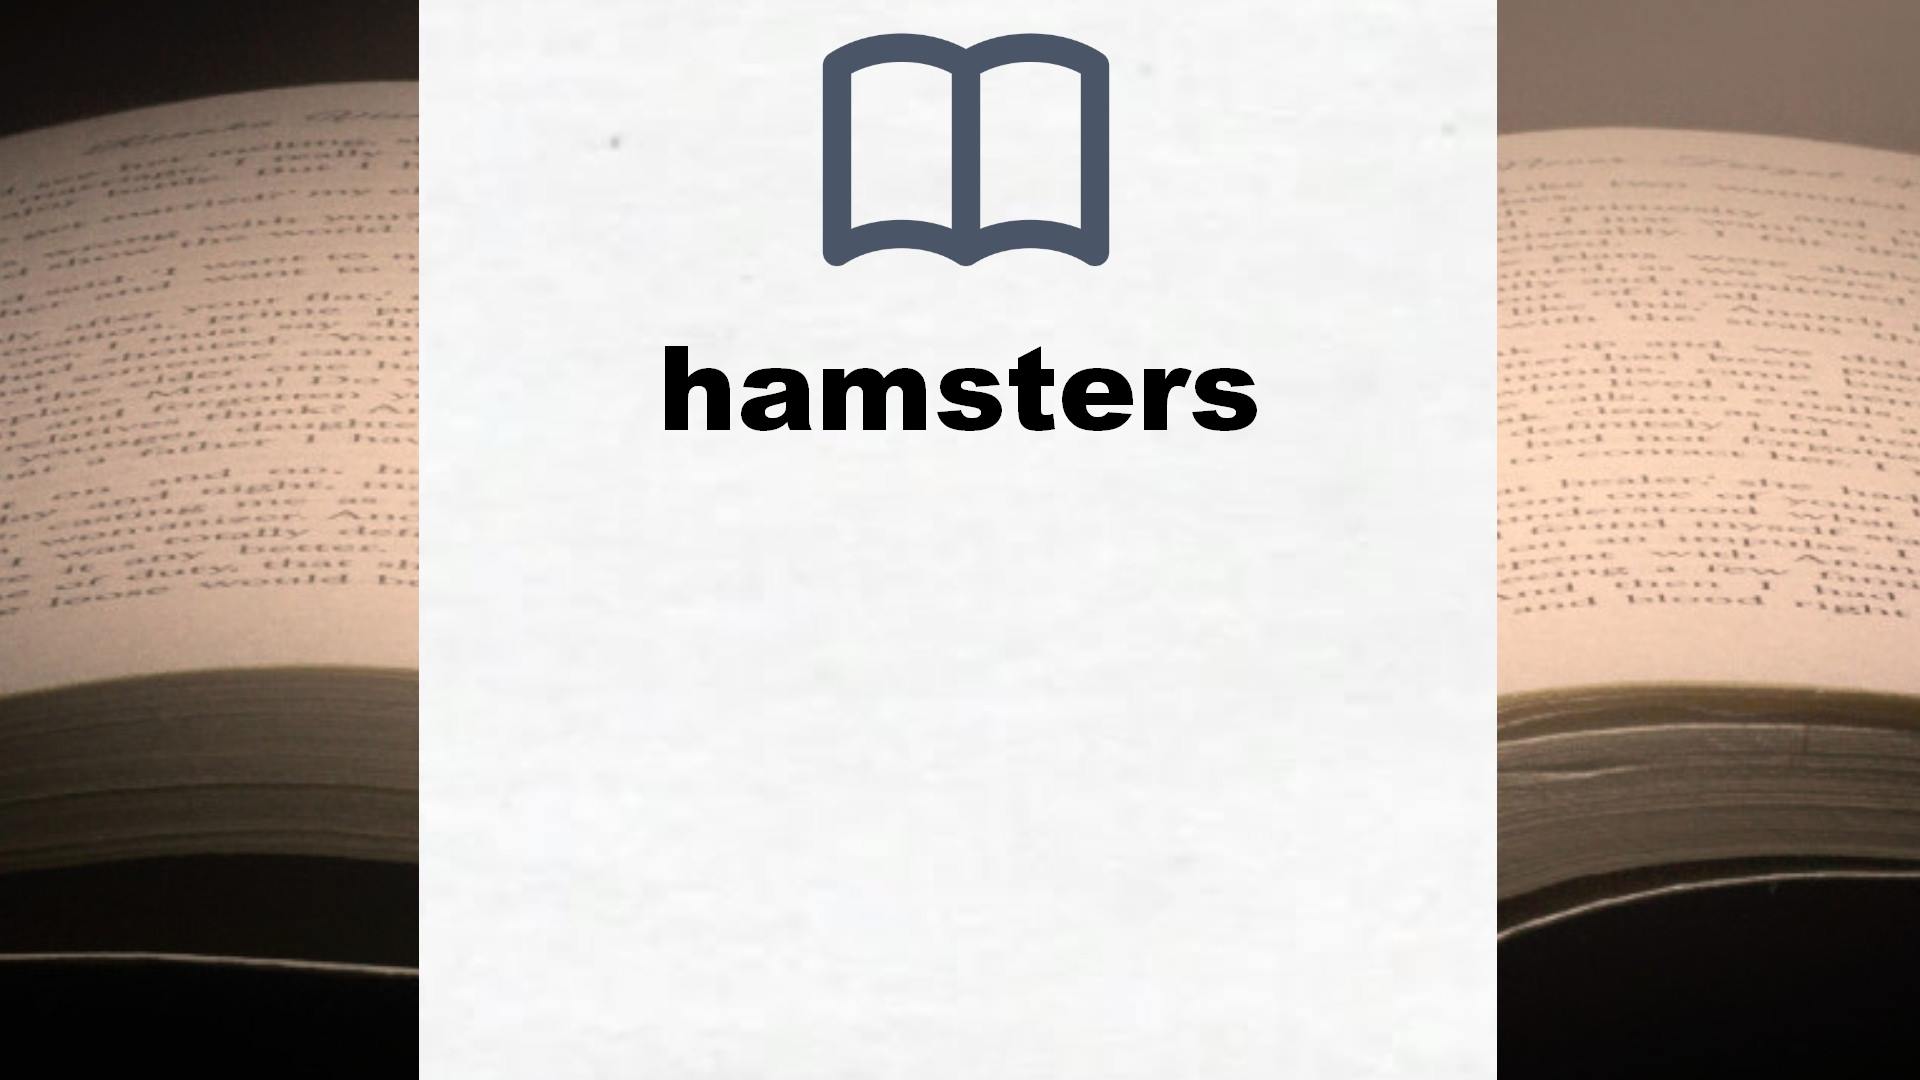 Libros sobre hamsters